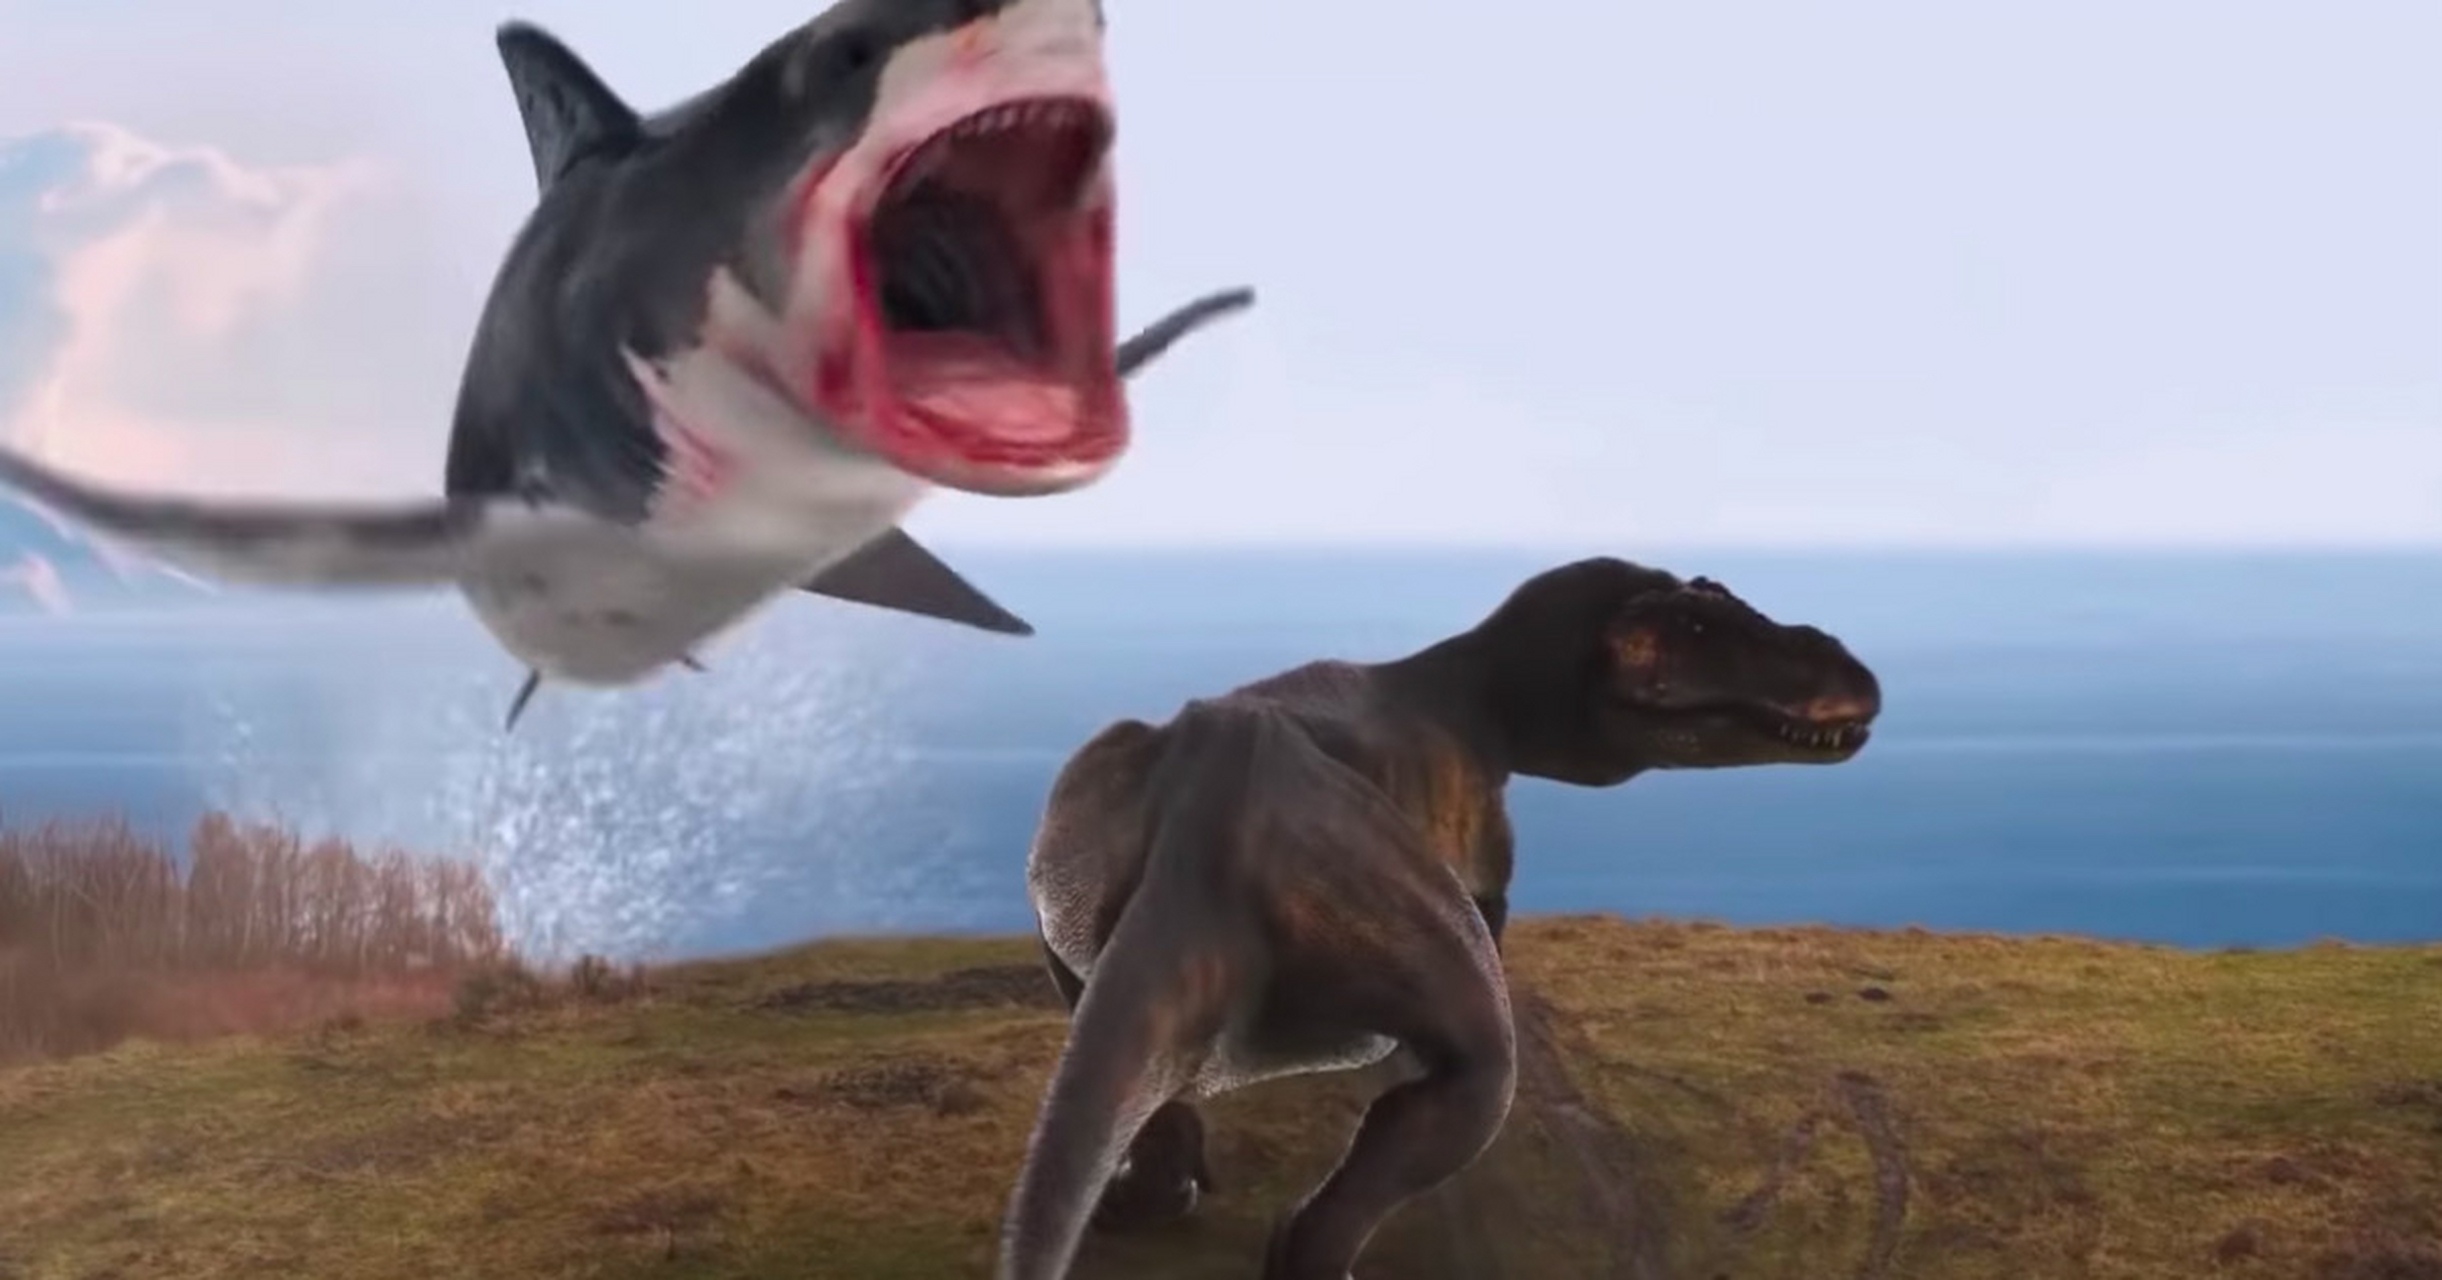 旋齿鲨vs巨齿鲨图片